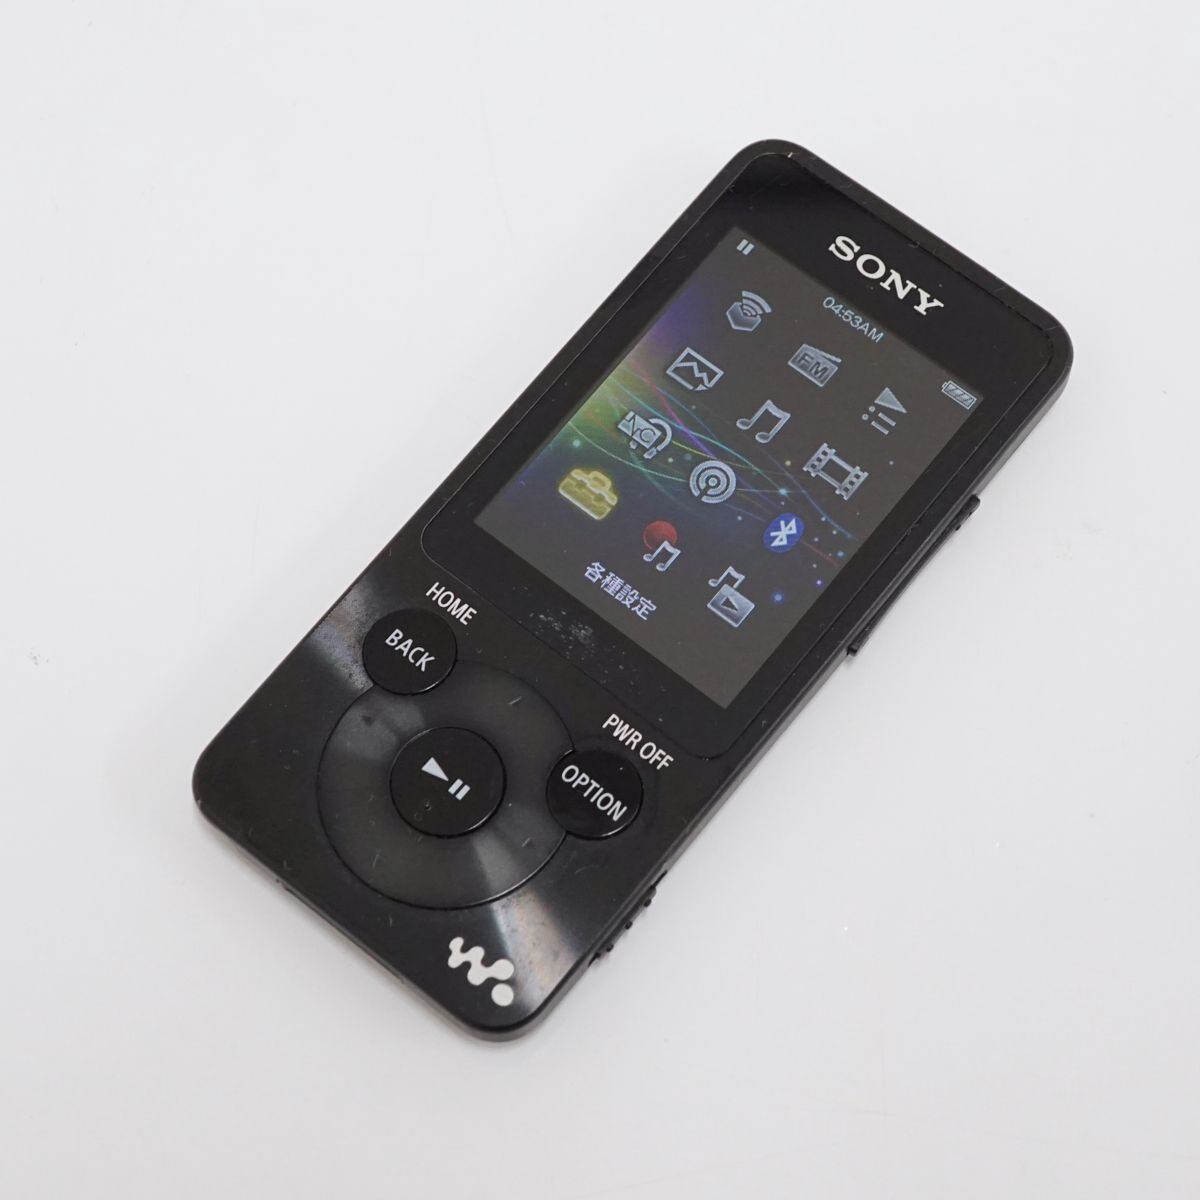 SONY ウォークマン NW-S785 16GB USED美品 本体のみ ブラック デジタルメディアプレーヤー Bluetooh対応 完動品 T  V9112